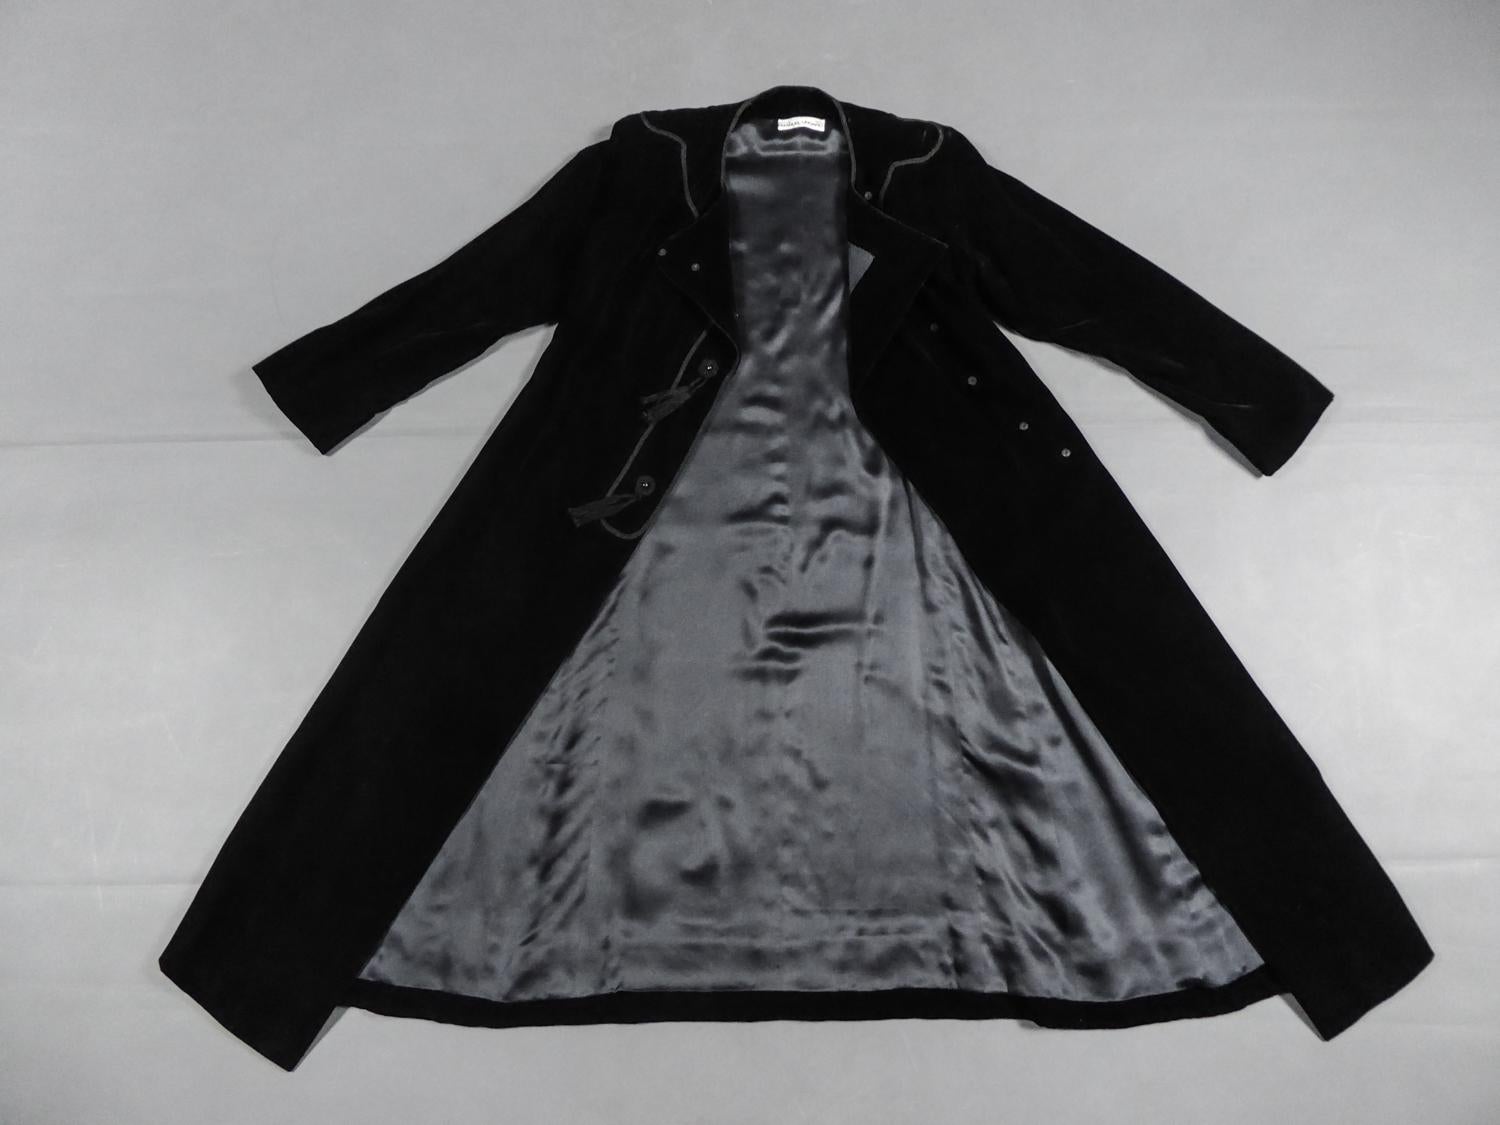 Circa 1976
France

Petite robe noire en panne de velours d'Emanuel Ungaro Haute Couture numérotée 4383-10-76 de la Collection 1976 du célèbre Couturier. Dans la lignée de l'inspiration des Ballets Russes d'Yves Saint Laurent, cette robe est ouverte